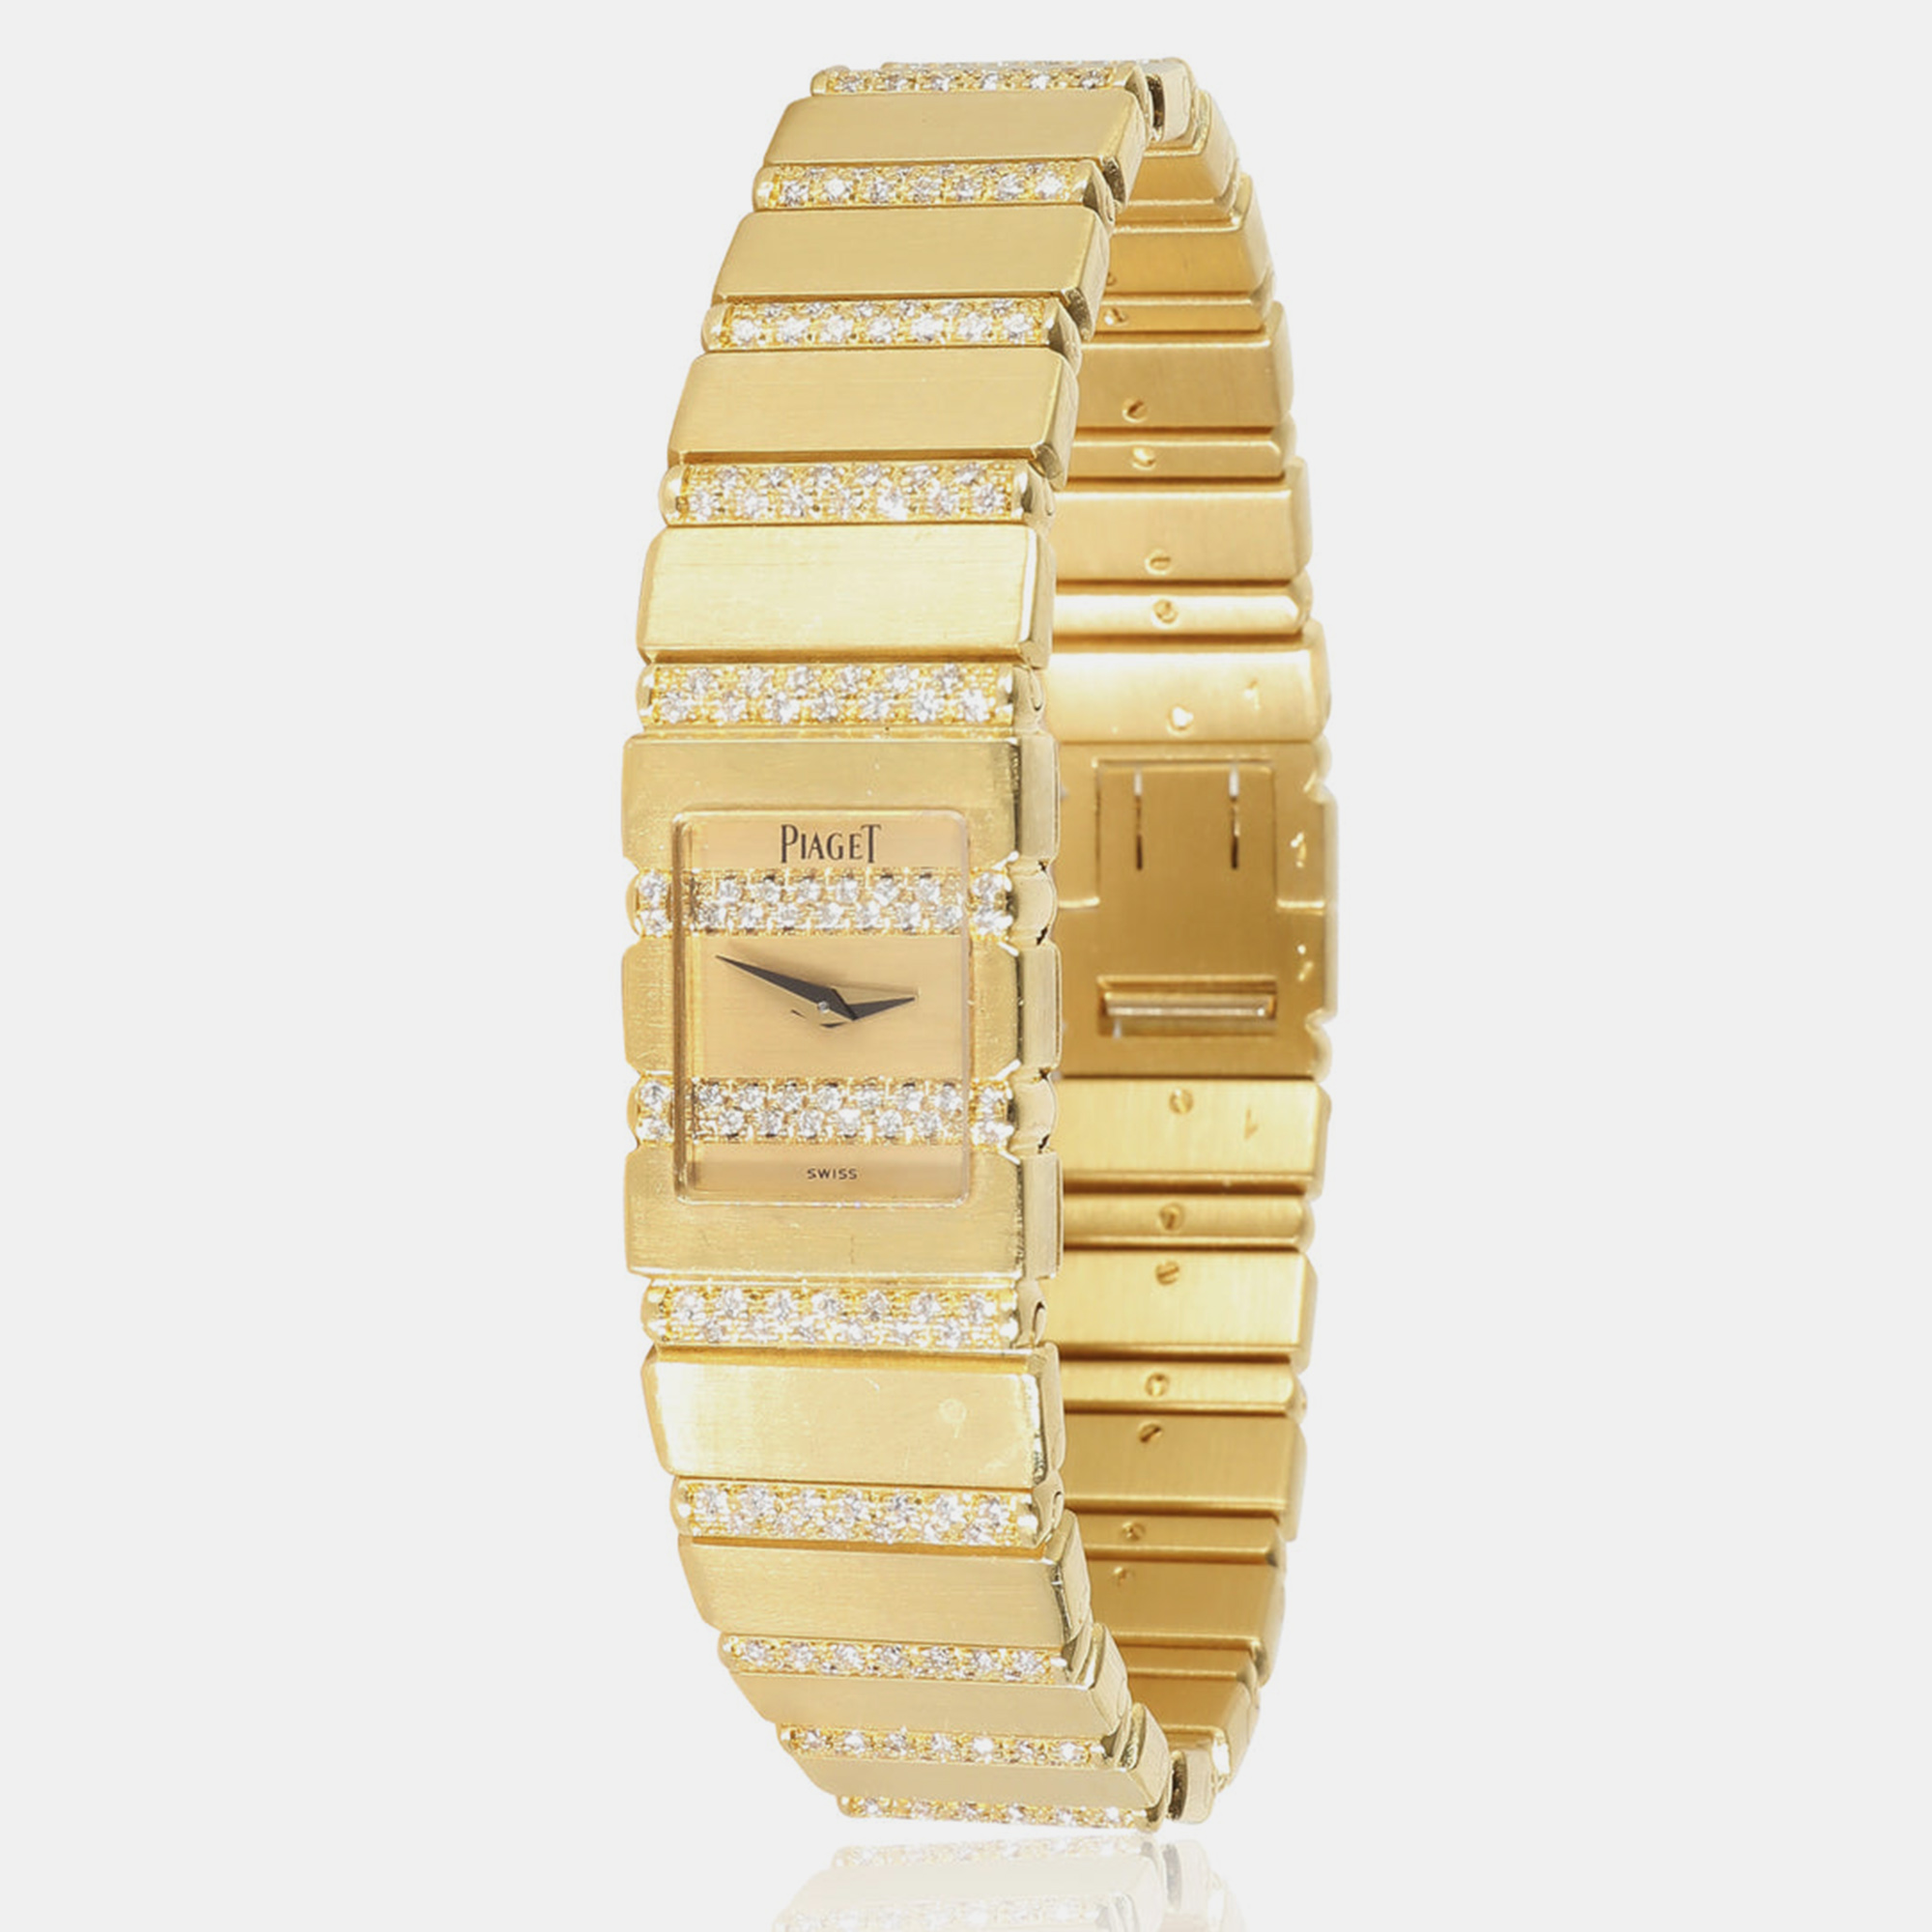 Piaget champagne 18k yellow gold polo 15201 quartz women's wristwatch 14 mm